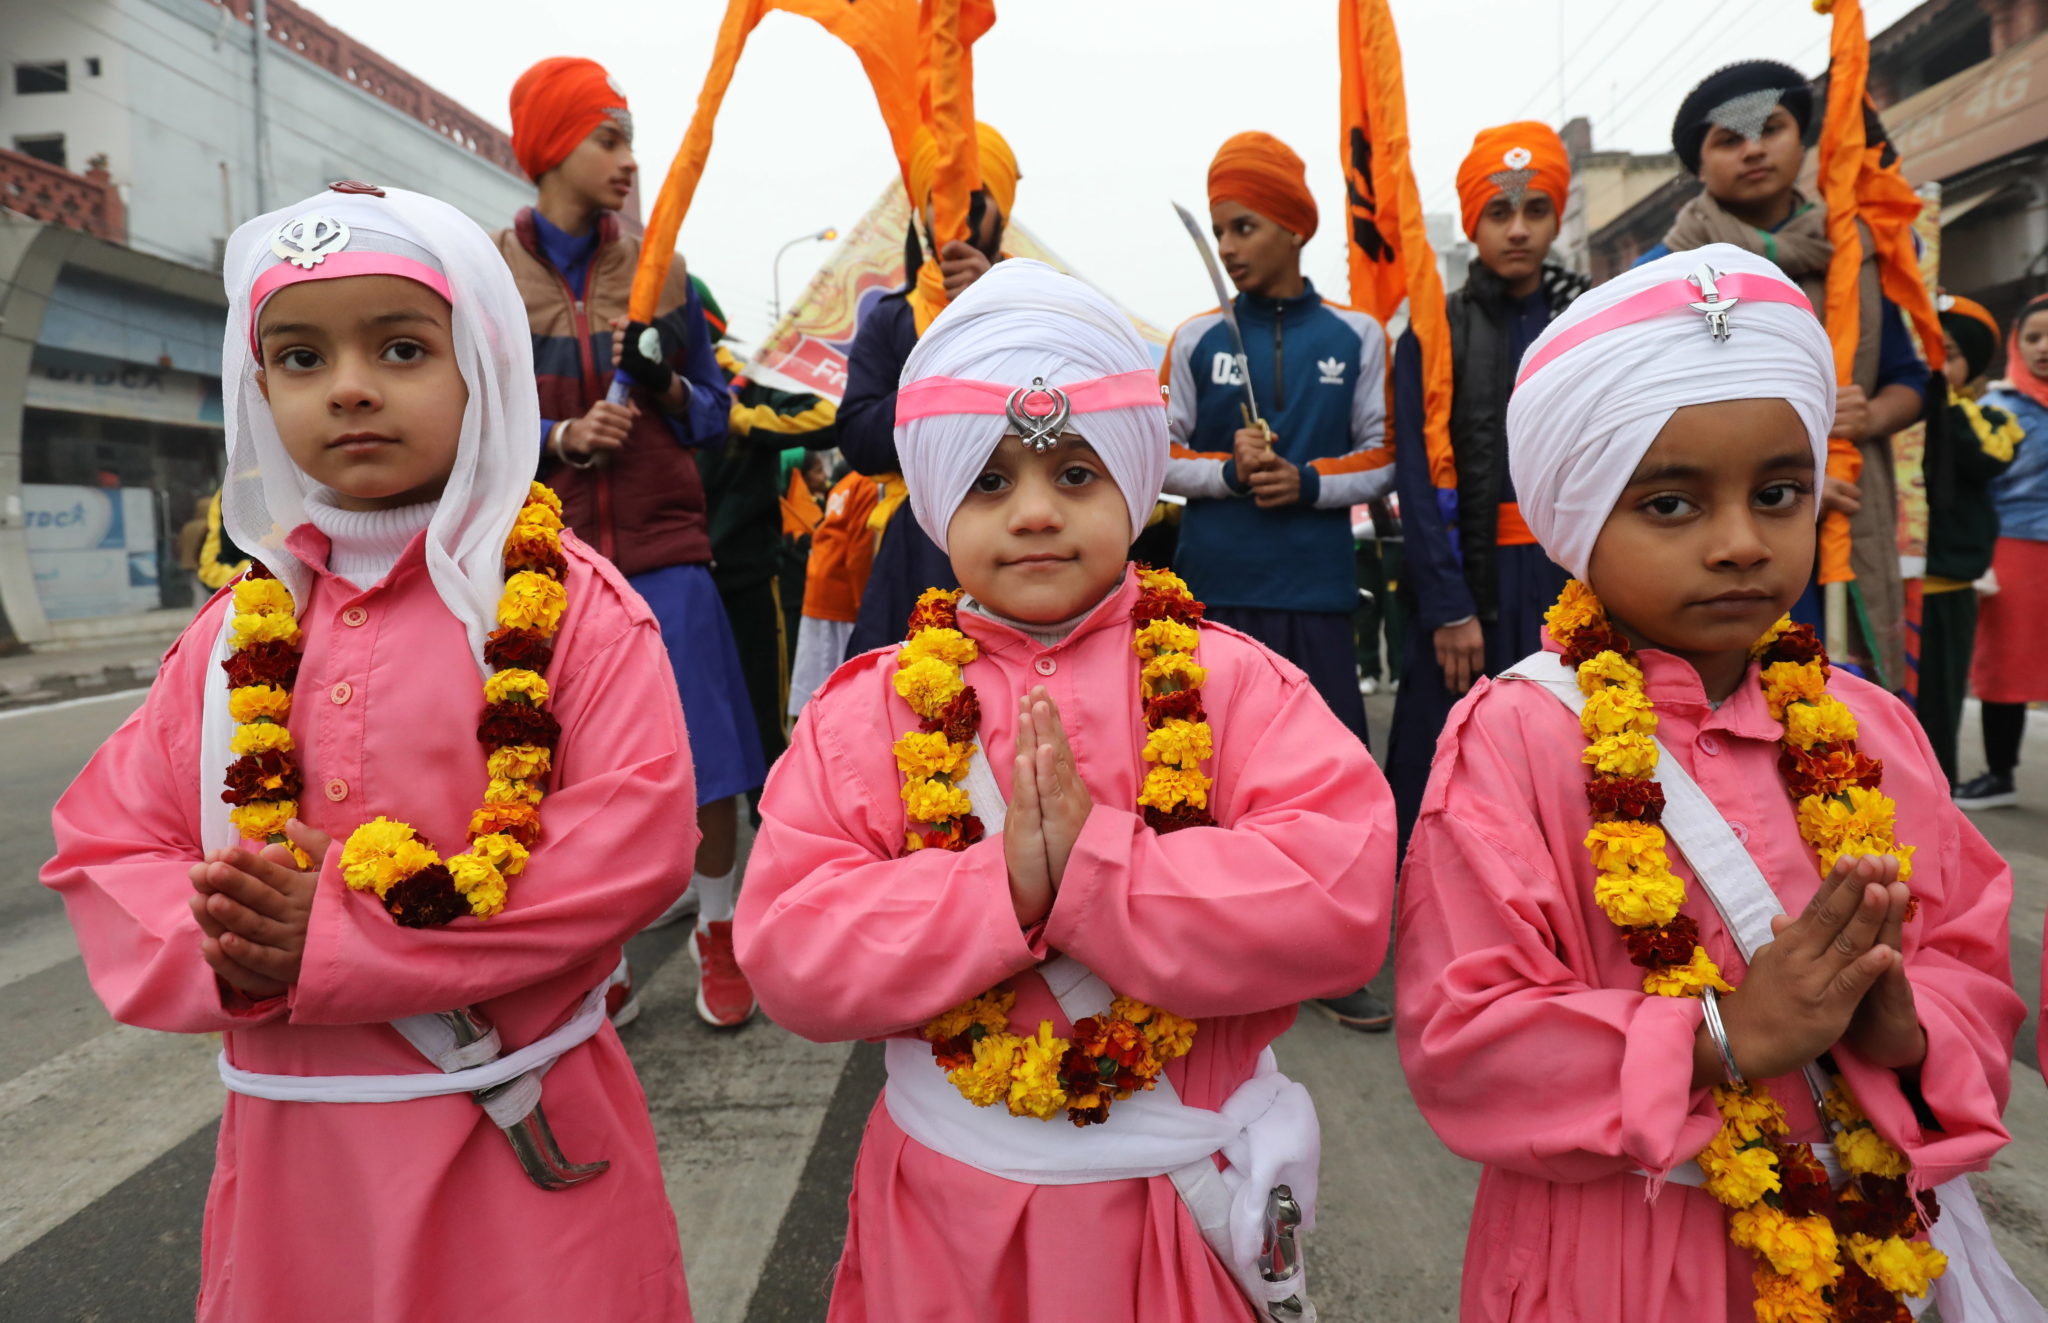 Tradycyjne procesja religijna z udziałem dzieci w indiach. fot. EPA/JAIPAL SINGH 